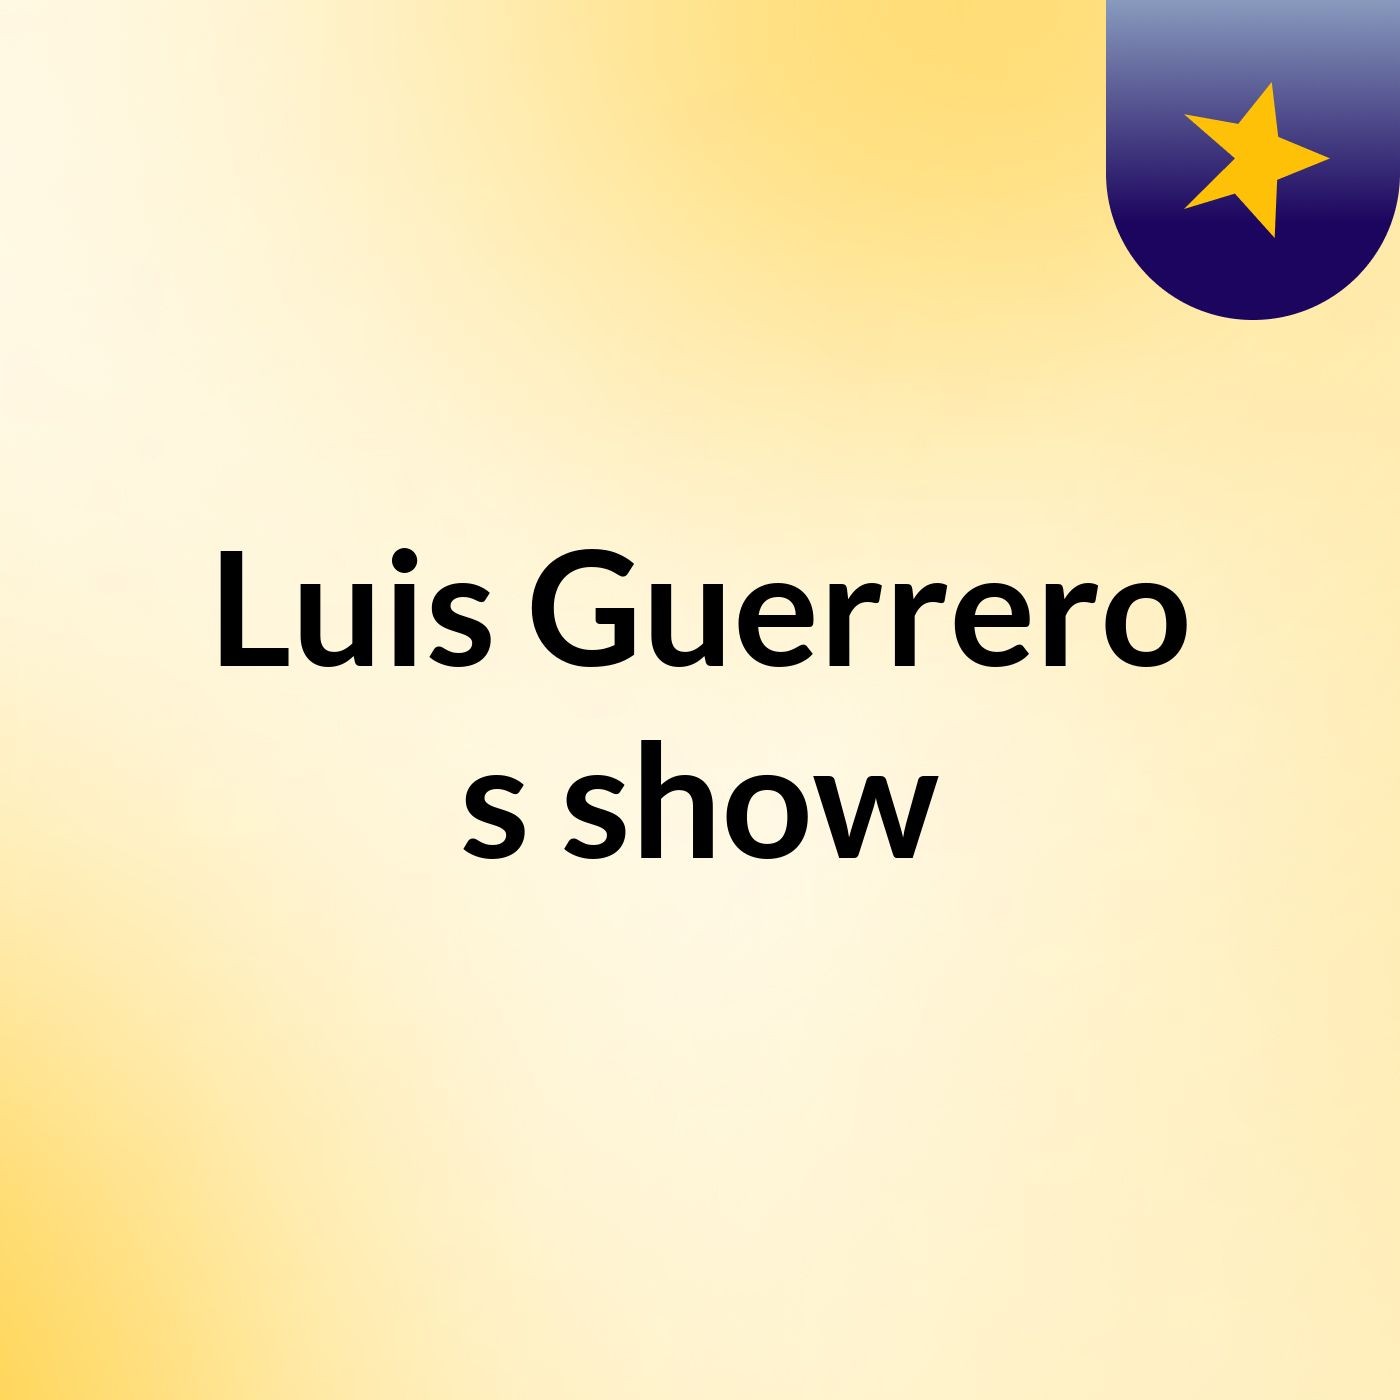 Luis Guerrero's show